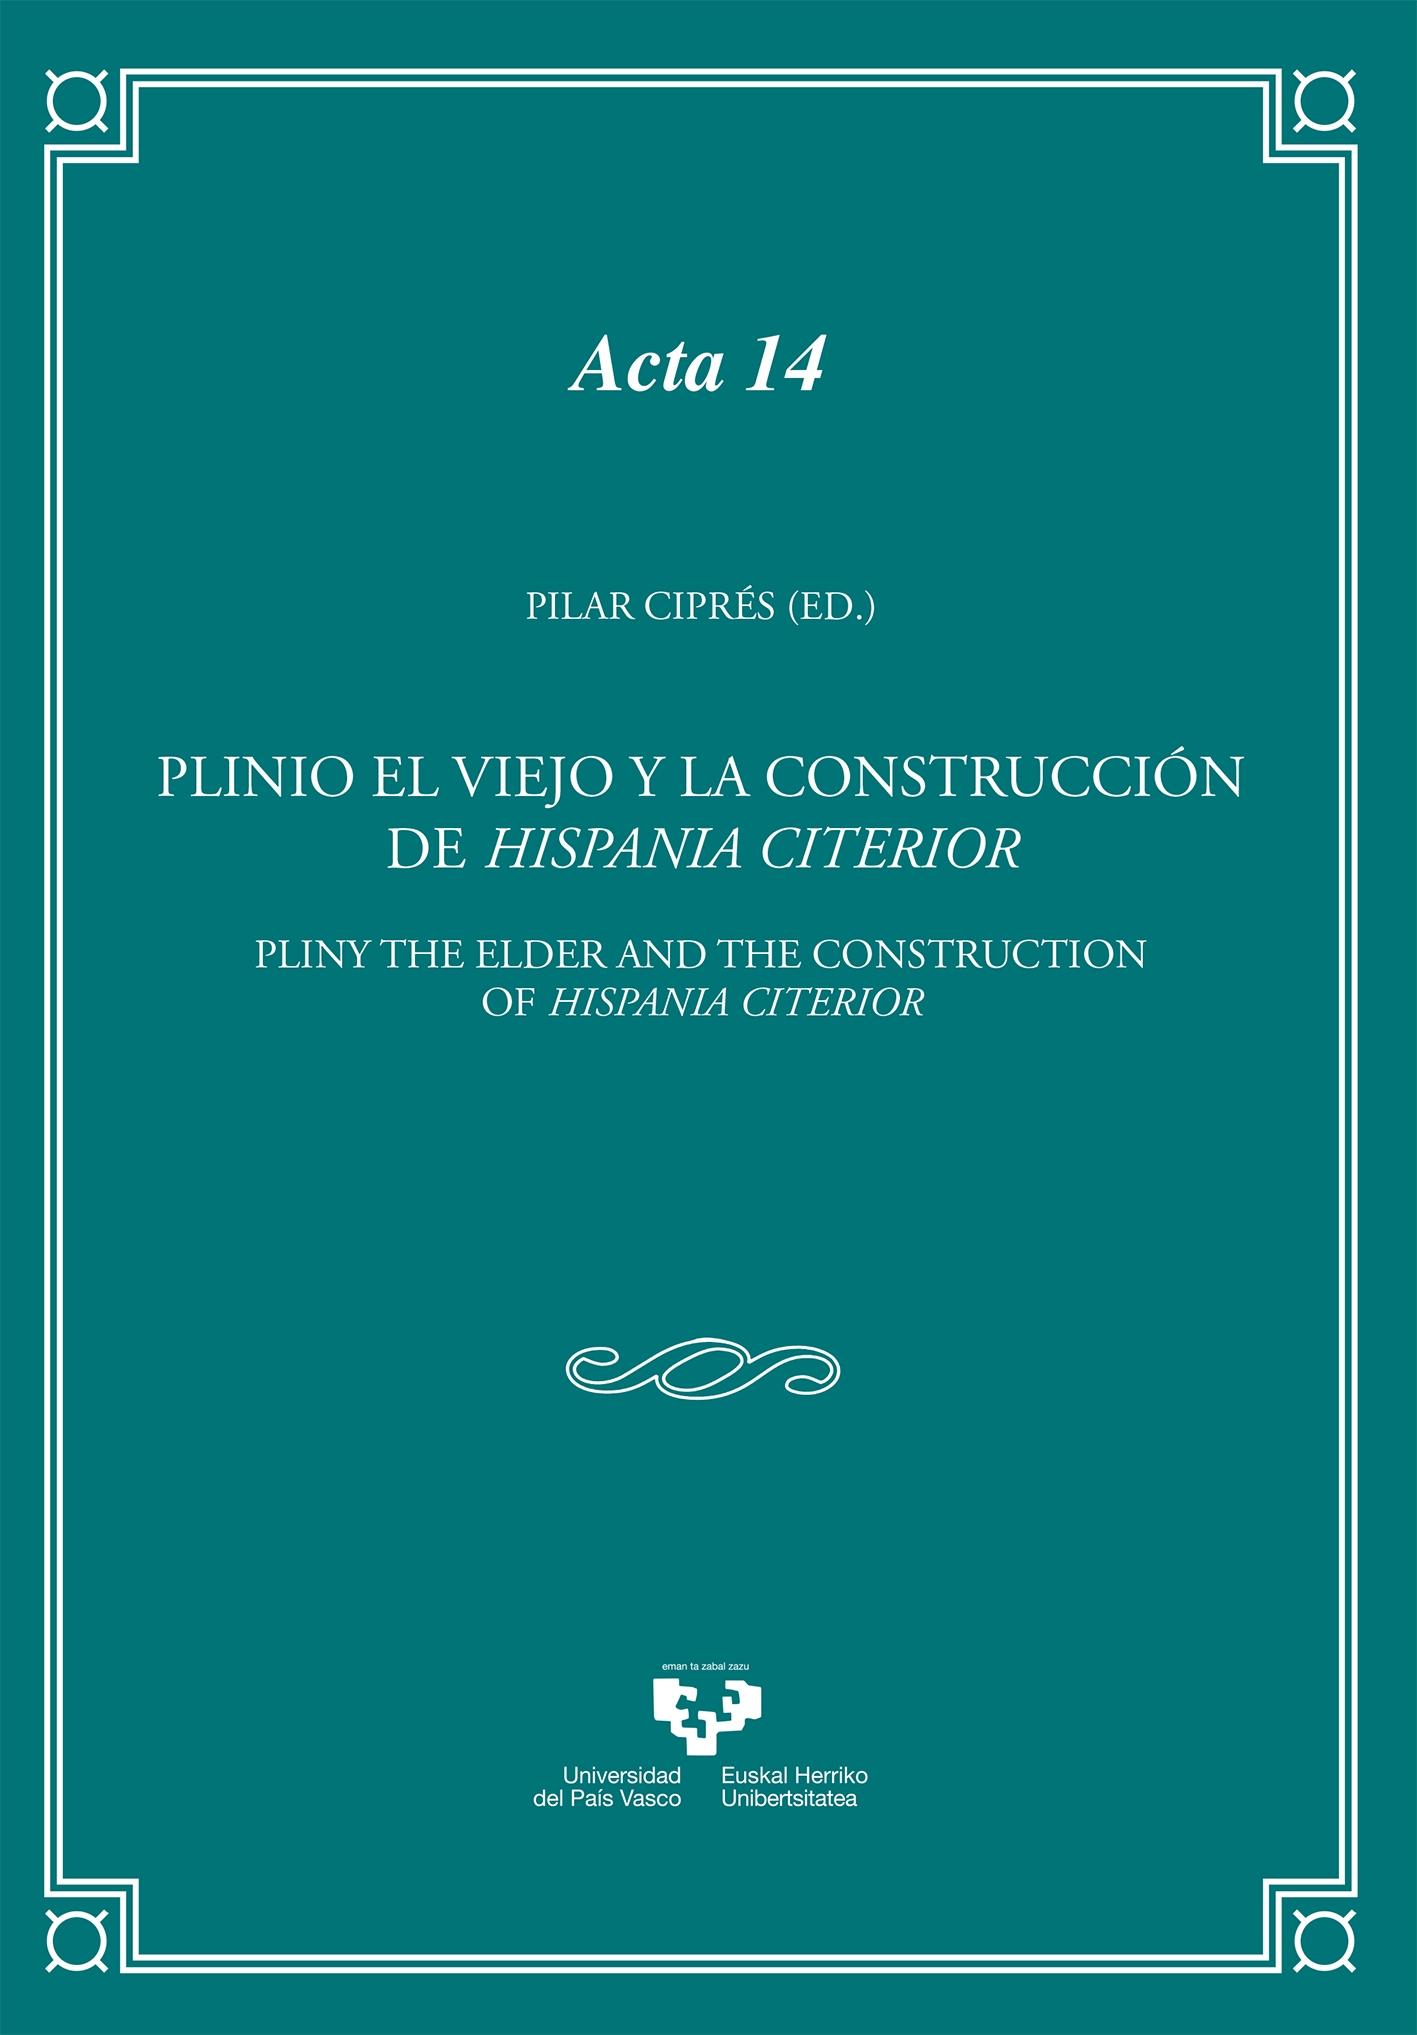 Plinio el Viejo y la construcción de Hispania Citerior "= Pliny the Elder and the construction of Hispania Citerior"